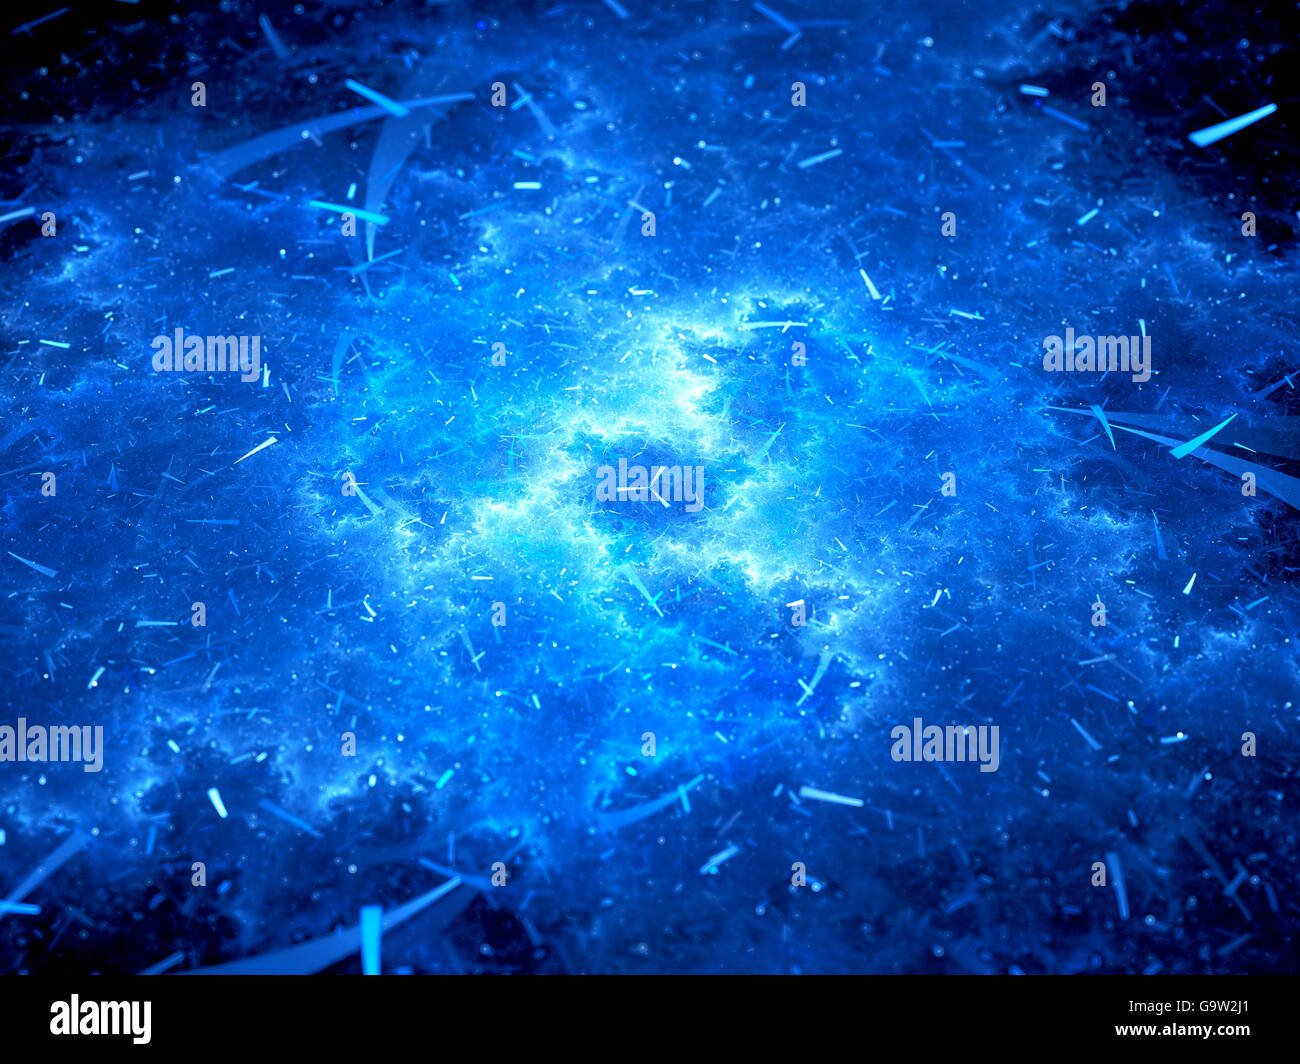 Rougeoyant bleu dans l'espace de transfert de données, générée par ordinateur abstract background Banque D'Images